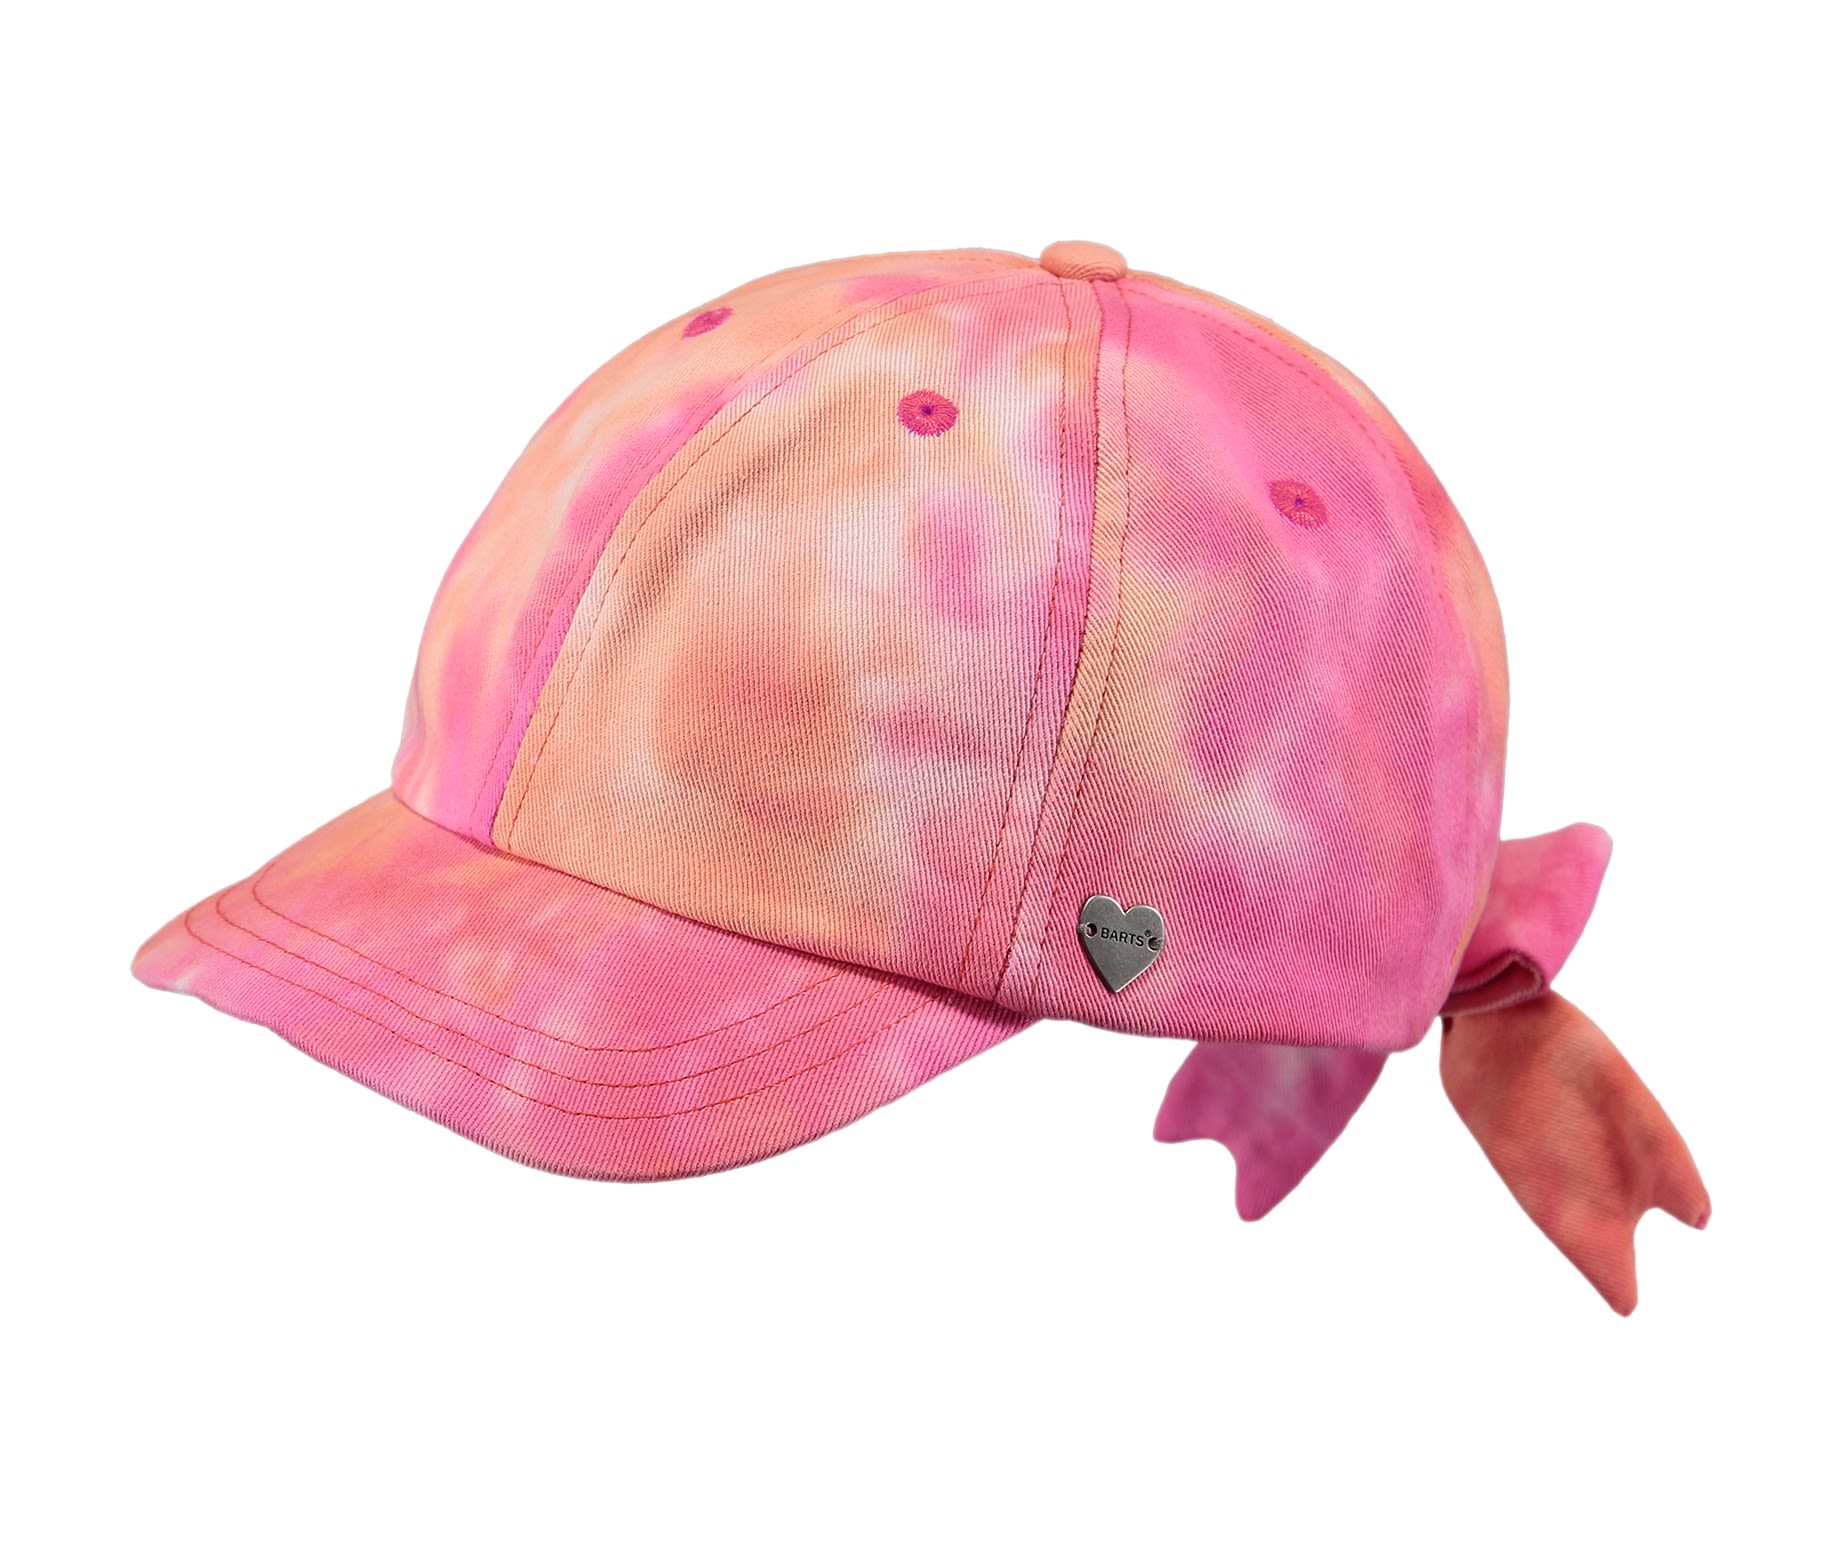 Barts Kids Flamingo Cap Pink | Größe 50 | Kinder Accessoires